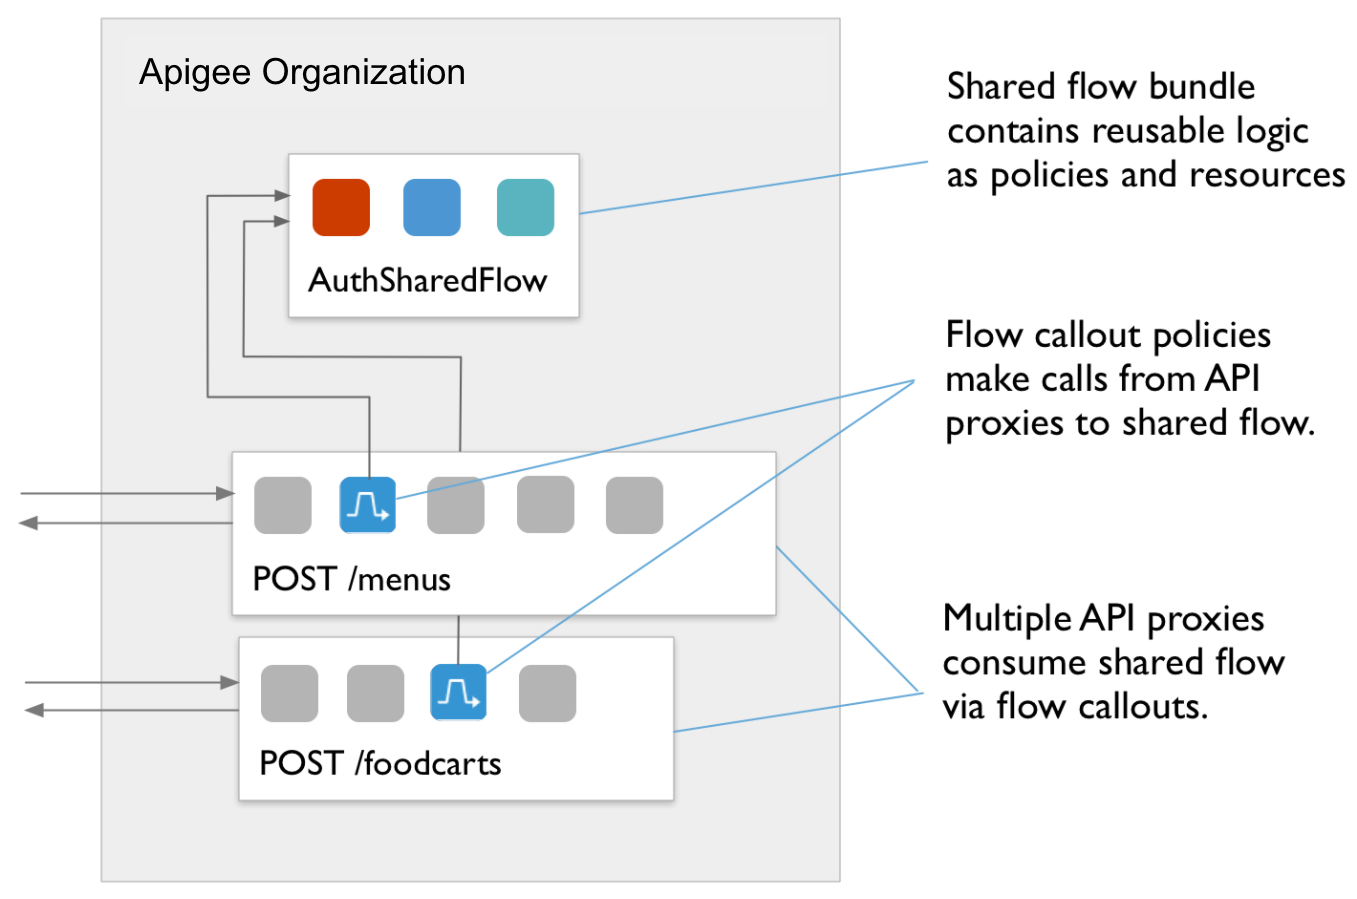 AuthSharedFlow への POST /menus ポリシーに対する POST /foodcars ポリシーを示すフロー図。
          吹き出しのテキスト: a）複数の API プロキシが FlowCallouts を介して共有フローを利用します。
          b）FlowCallout ポリシーは、API プロキシから共有フローを呼び出します。
          c）共有フローバンドルには、再利用可能なロジックがポリシーとリソースとして含まれています。